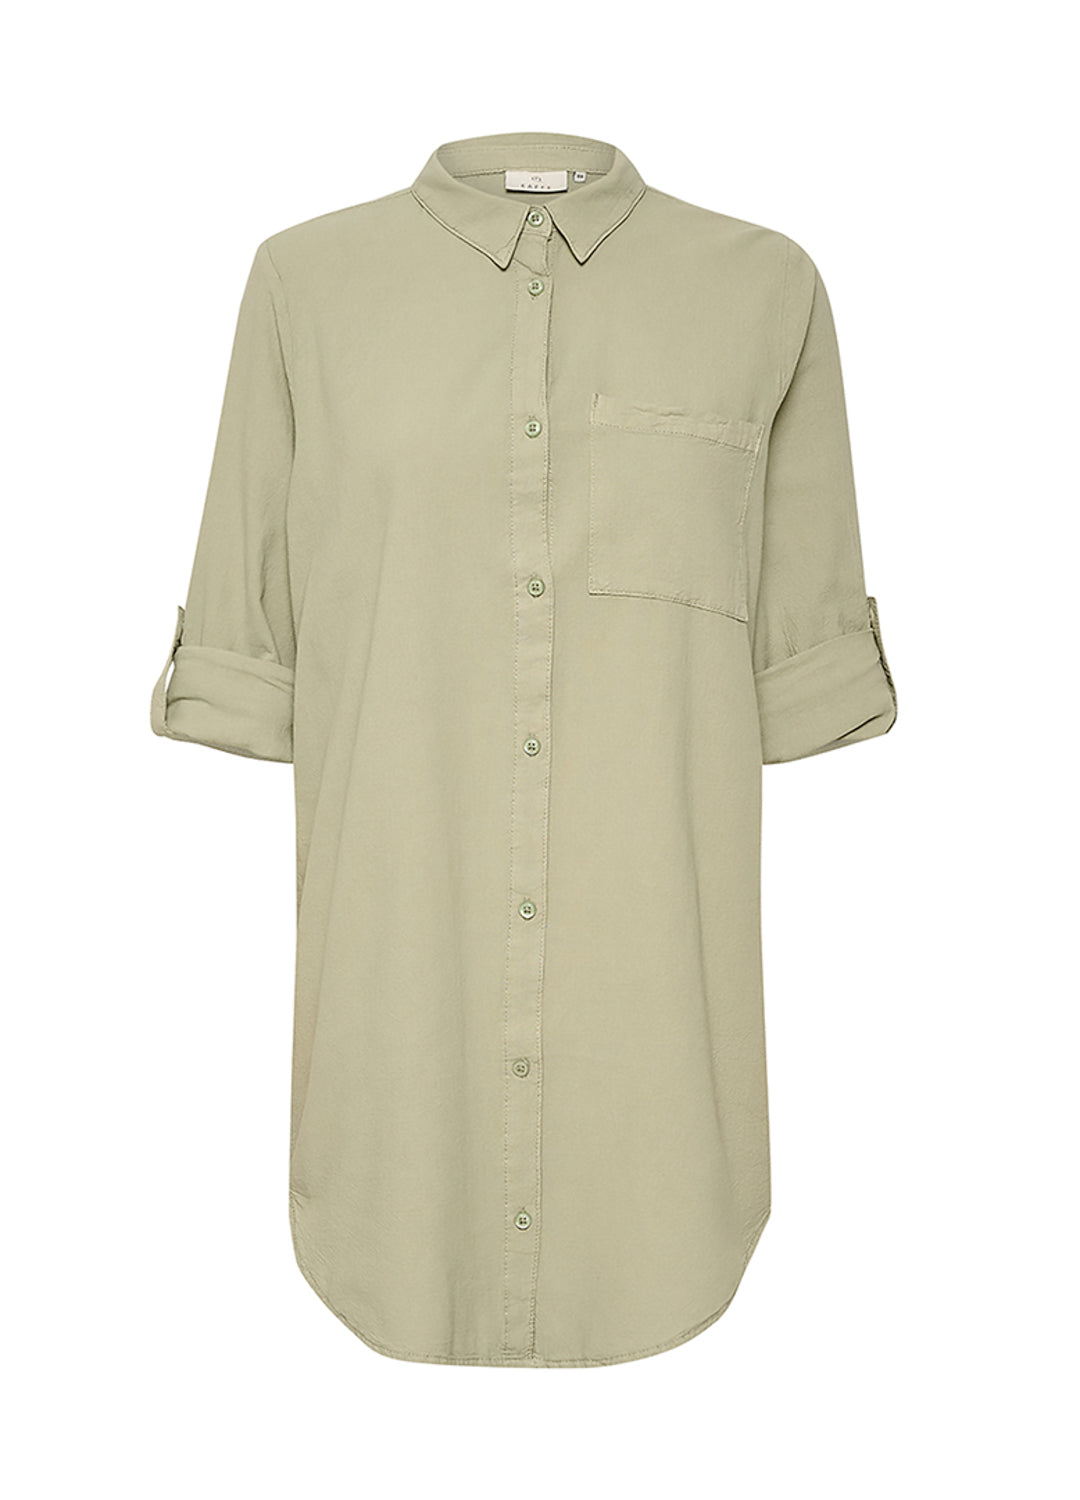 Kanaya Shirt Tunic - Seagrass